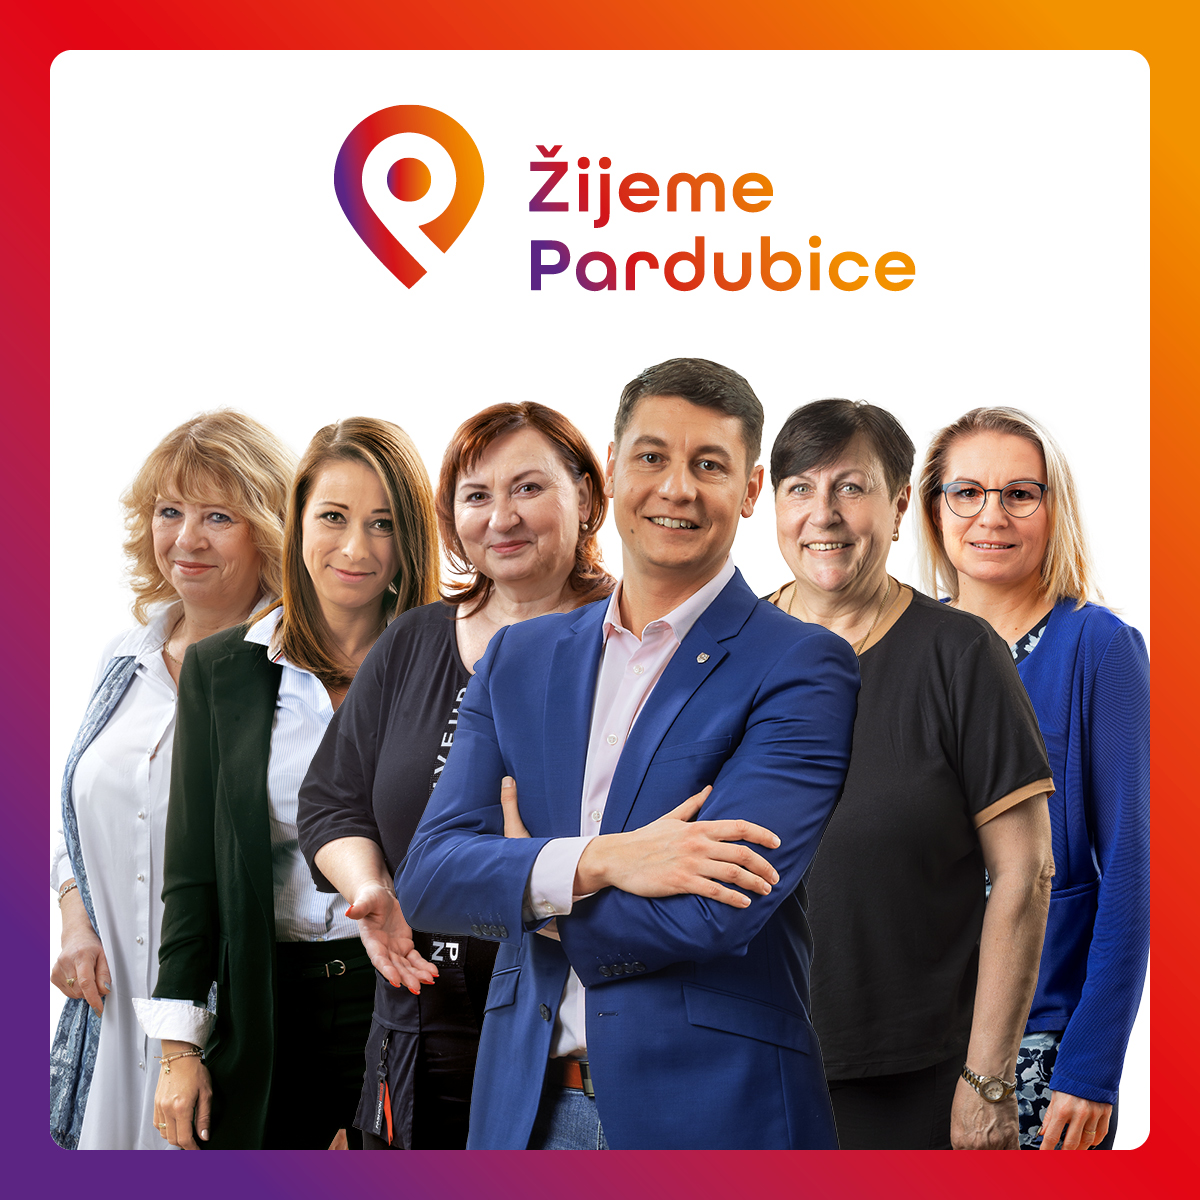 Žijeme Pardubice má více žen než mužů na kandidátce. Nejvíce ze všech uskupení